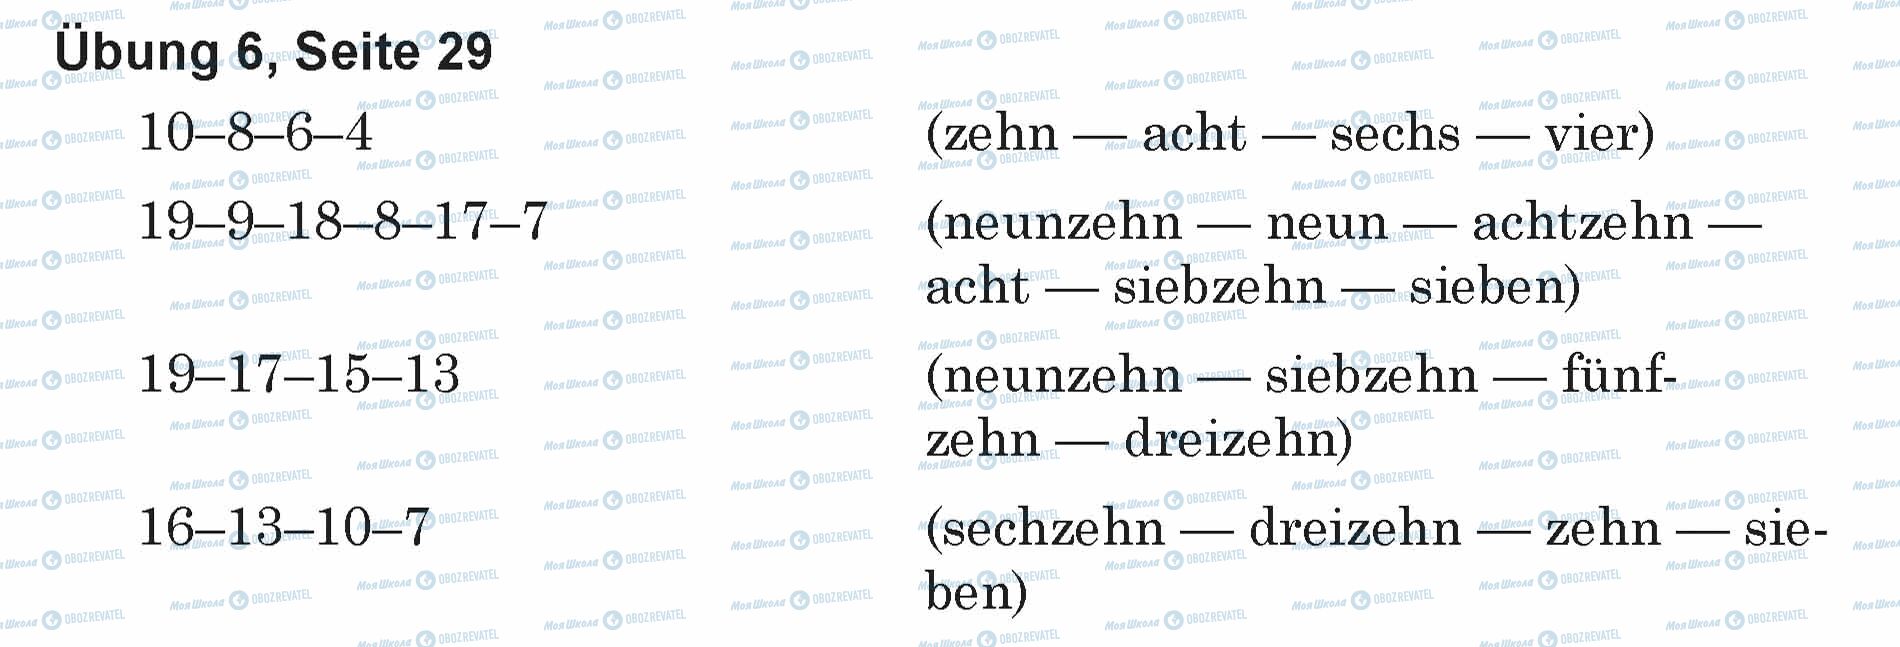 ГДЗ Немецкий язык 5 класс страница Ubung 6, Seite 29